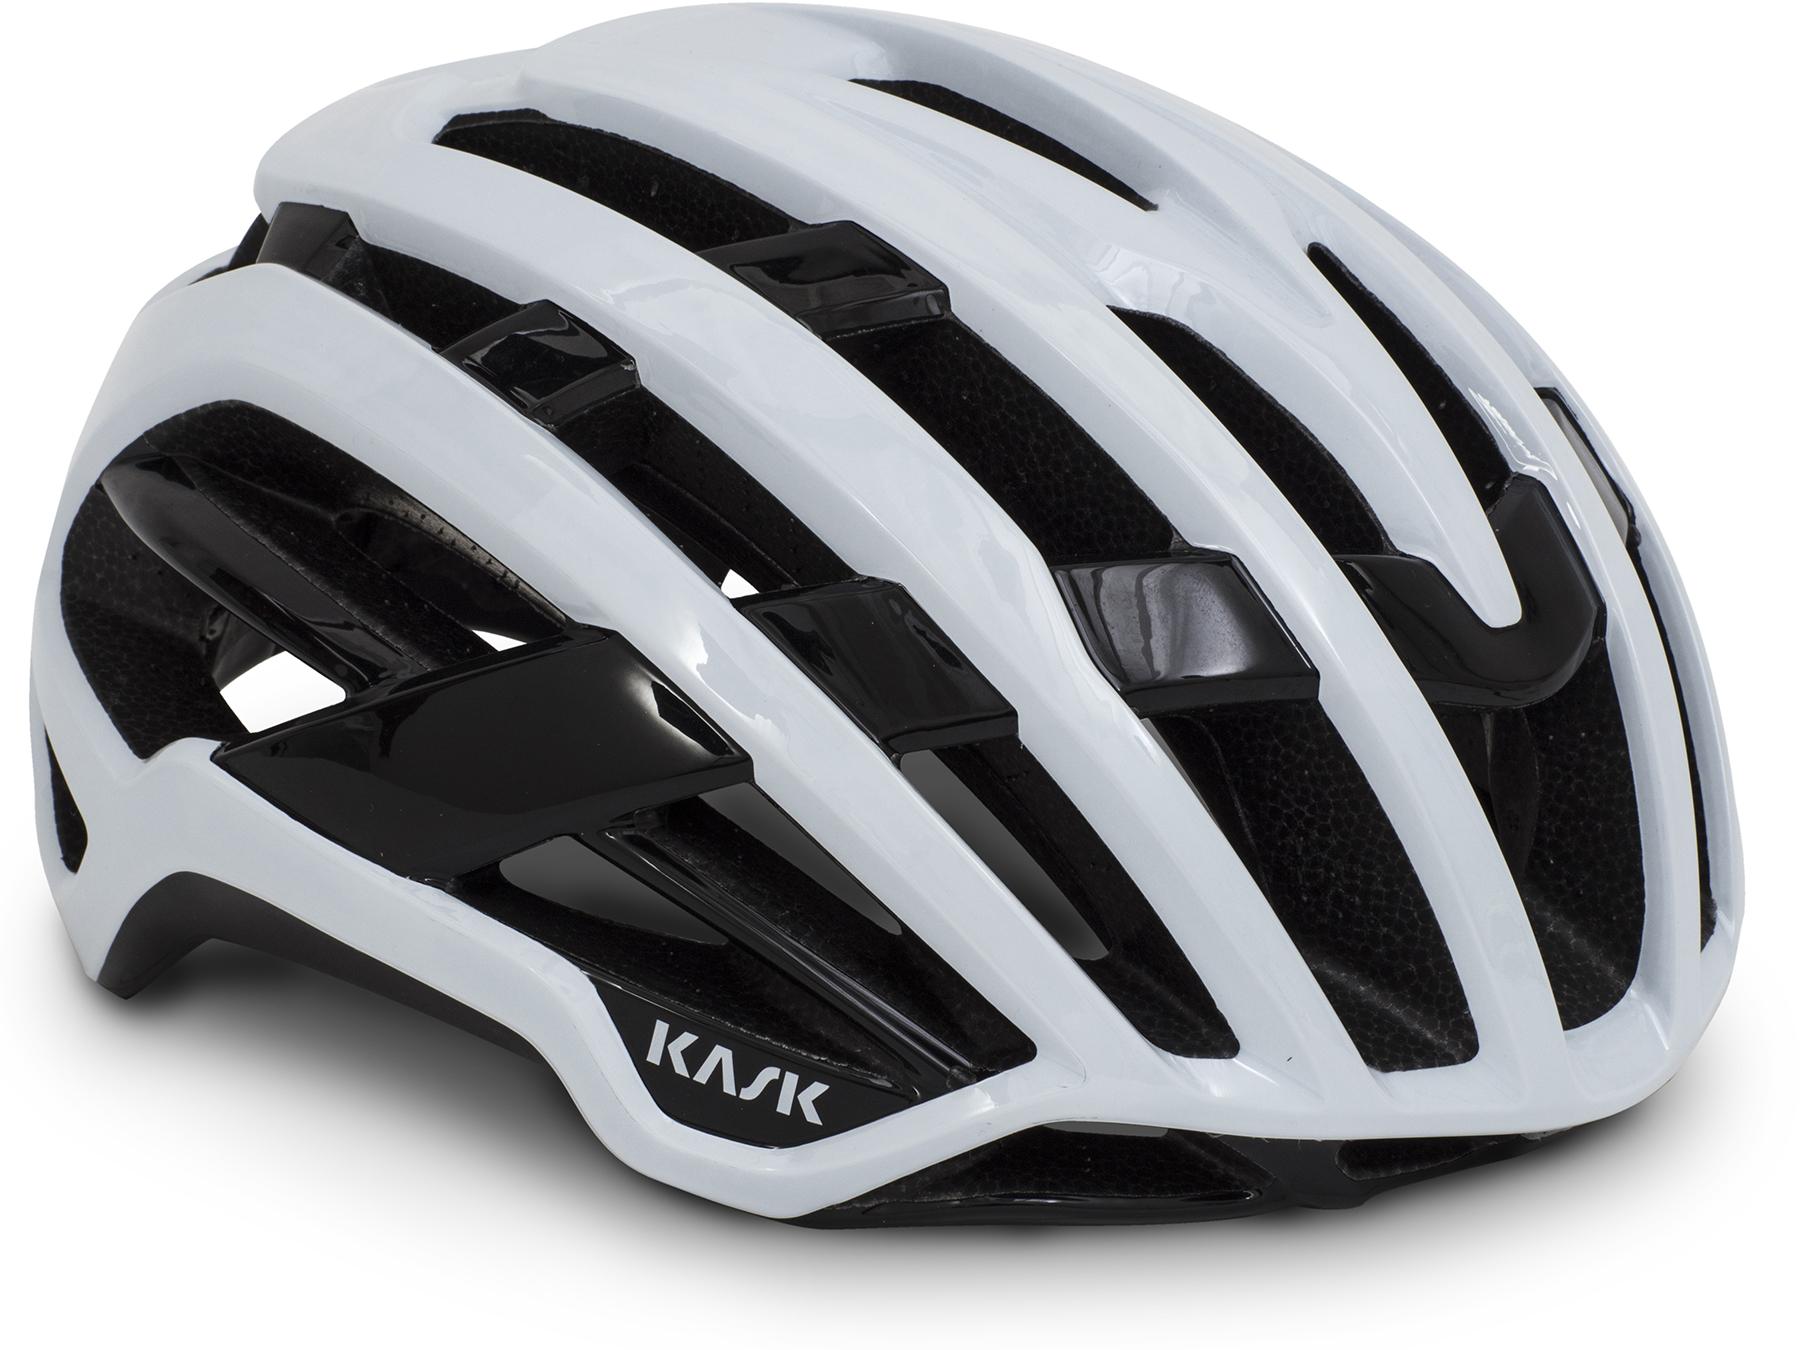 Kask Valegro Road Cycling Helmet (wg11) - White